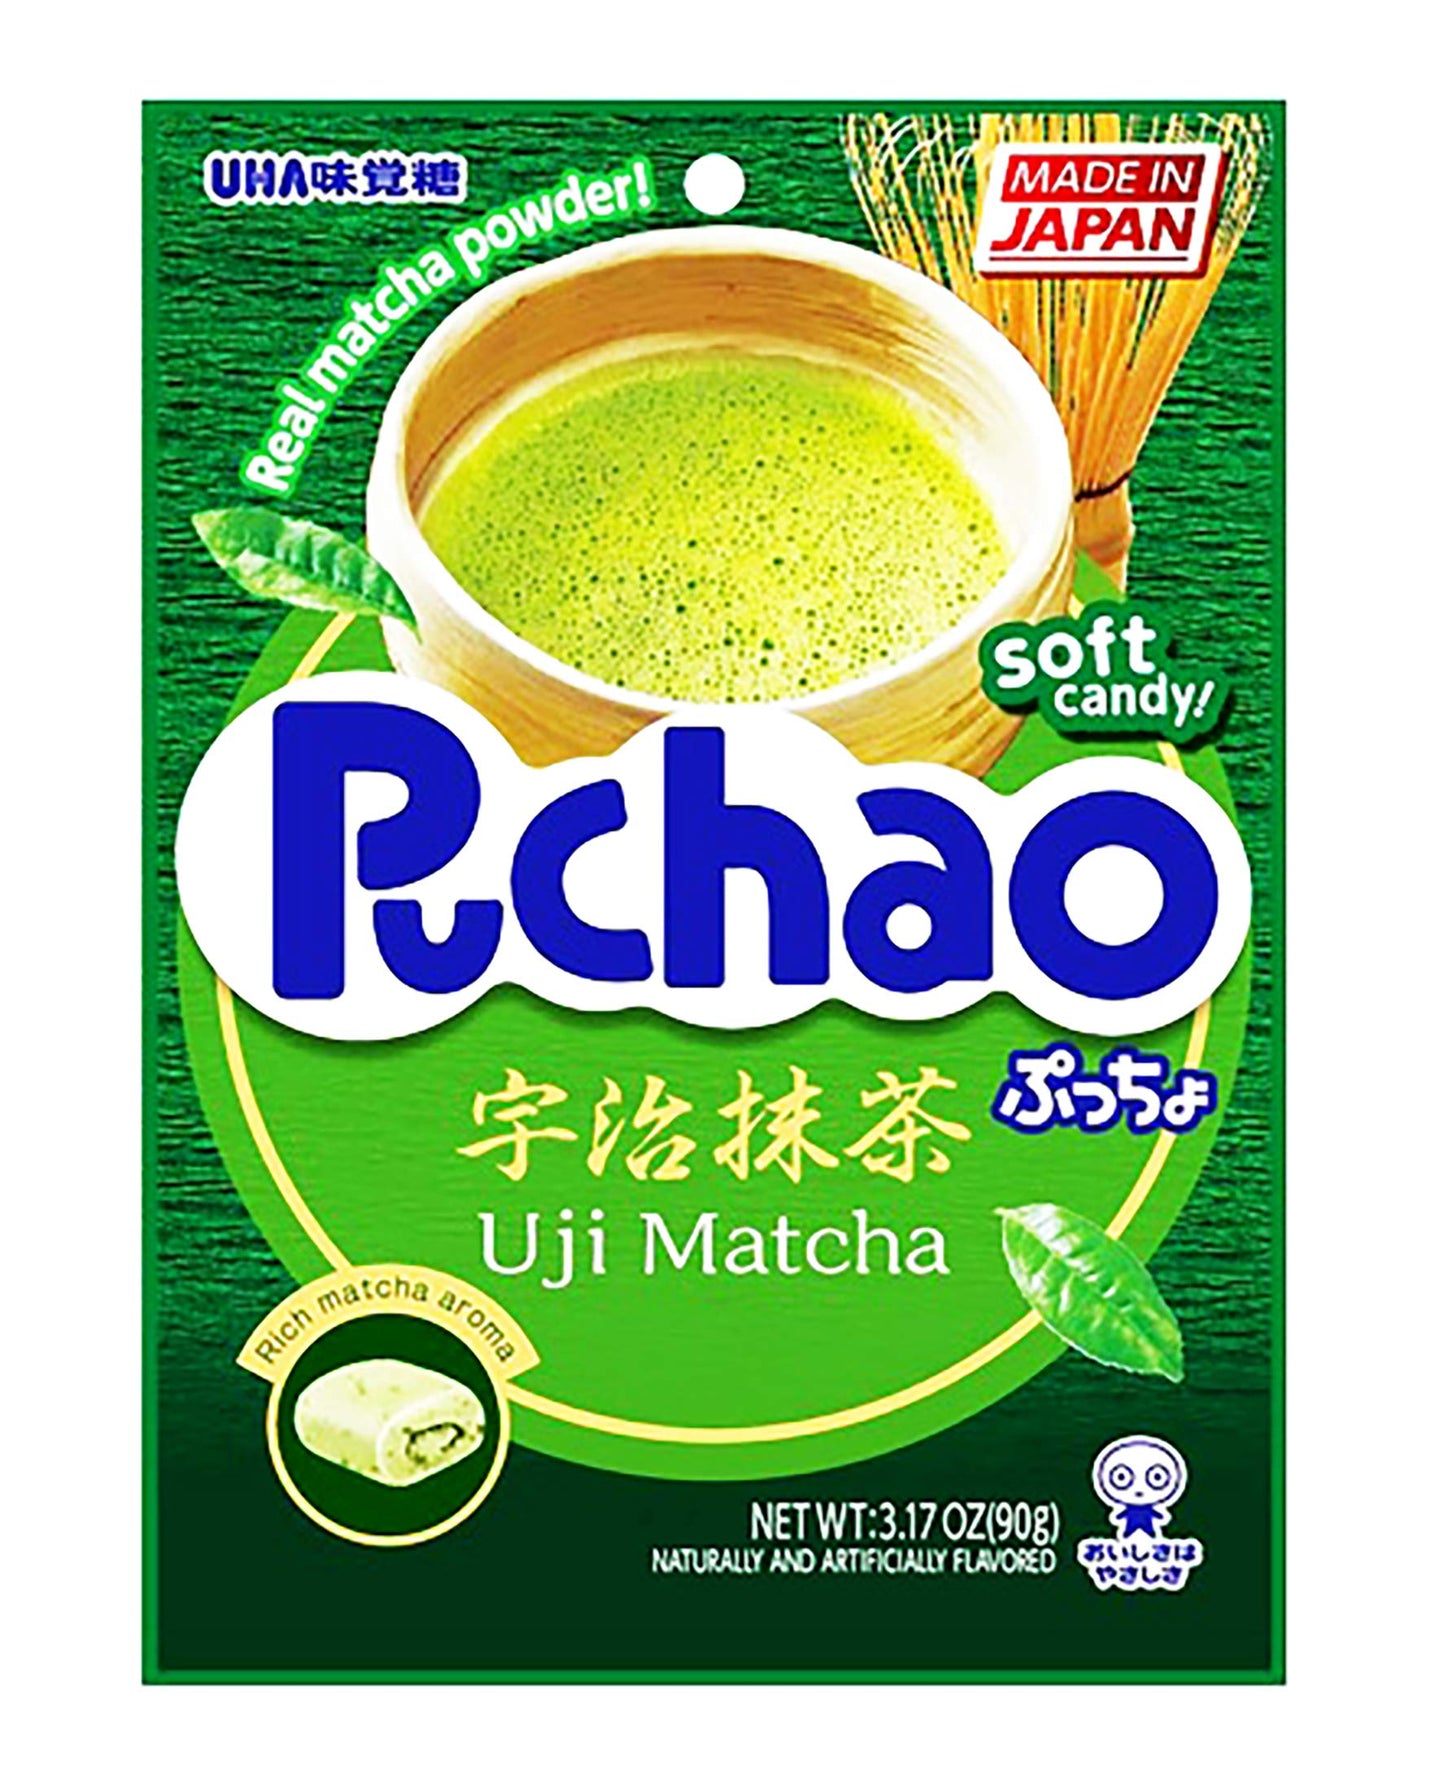 UHA -Puchao Gummy n' Soft Candy - Uji Matcha